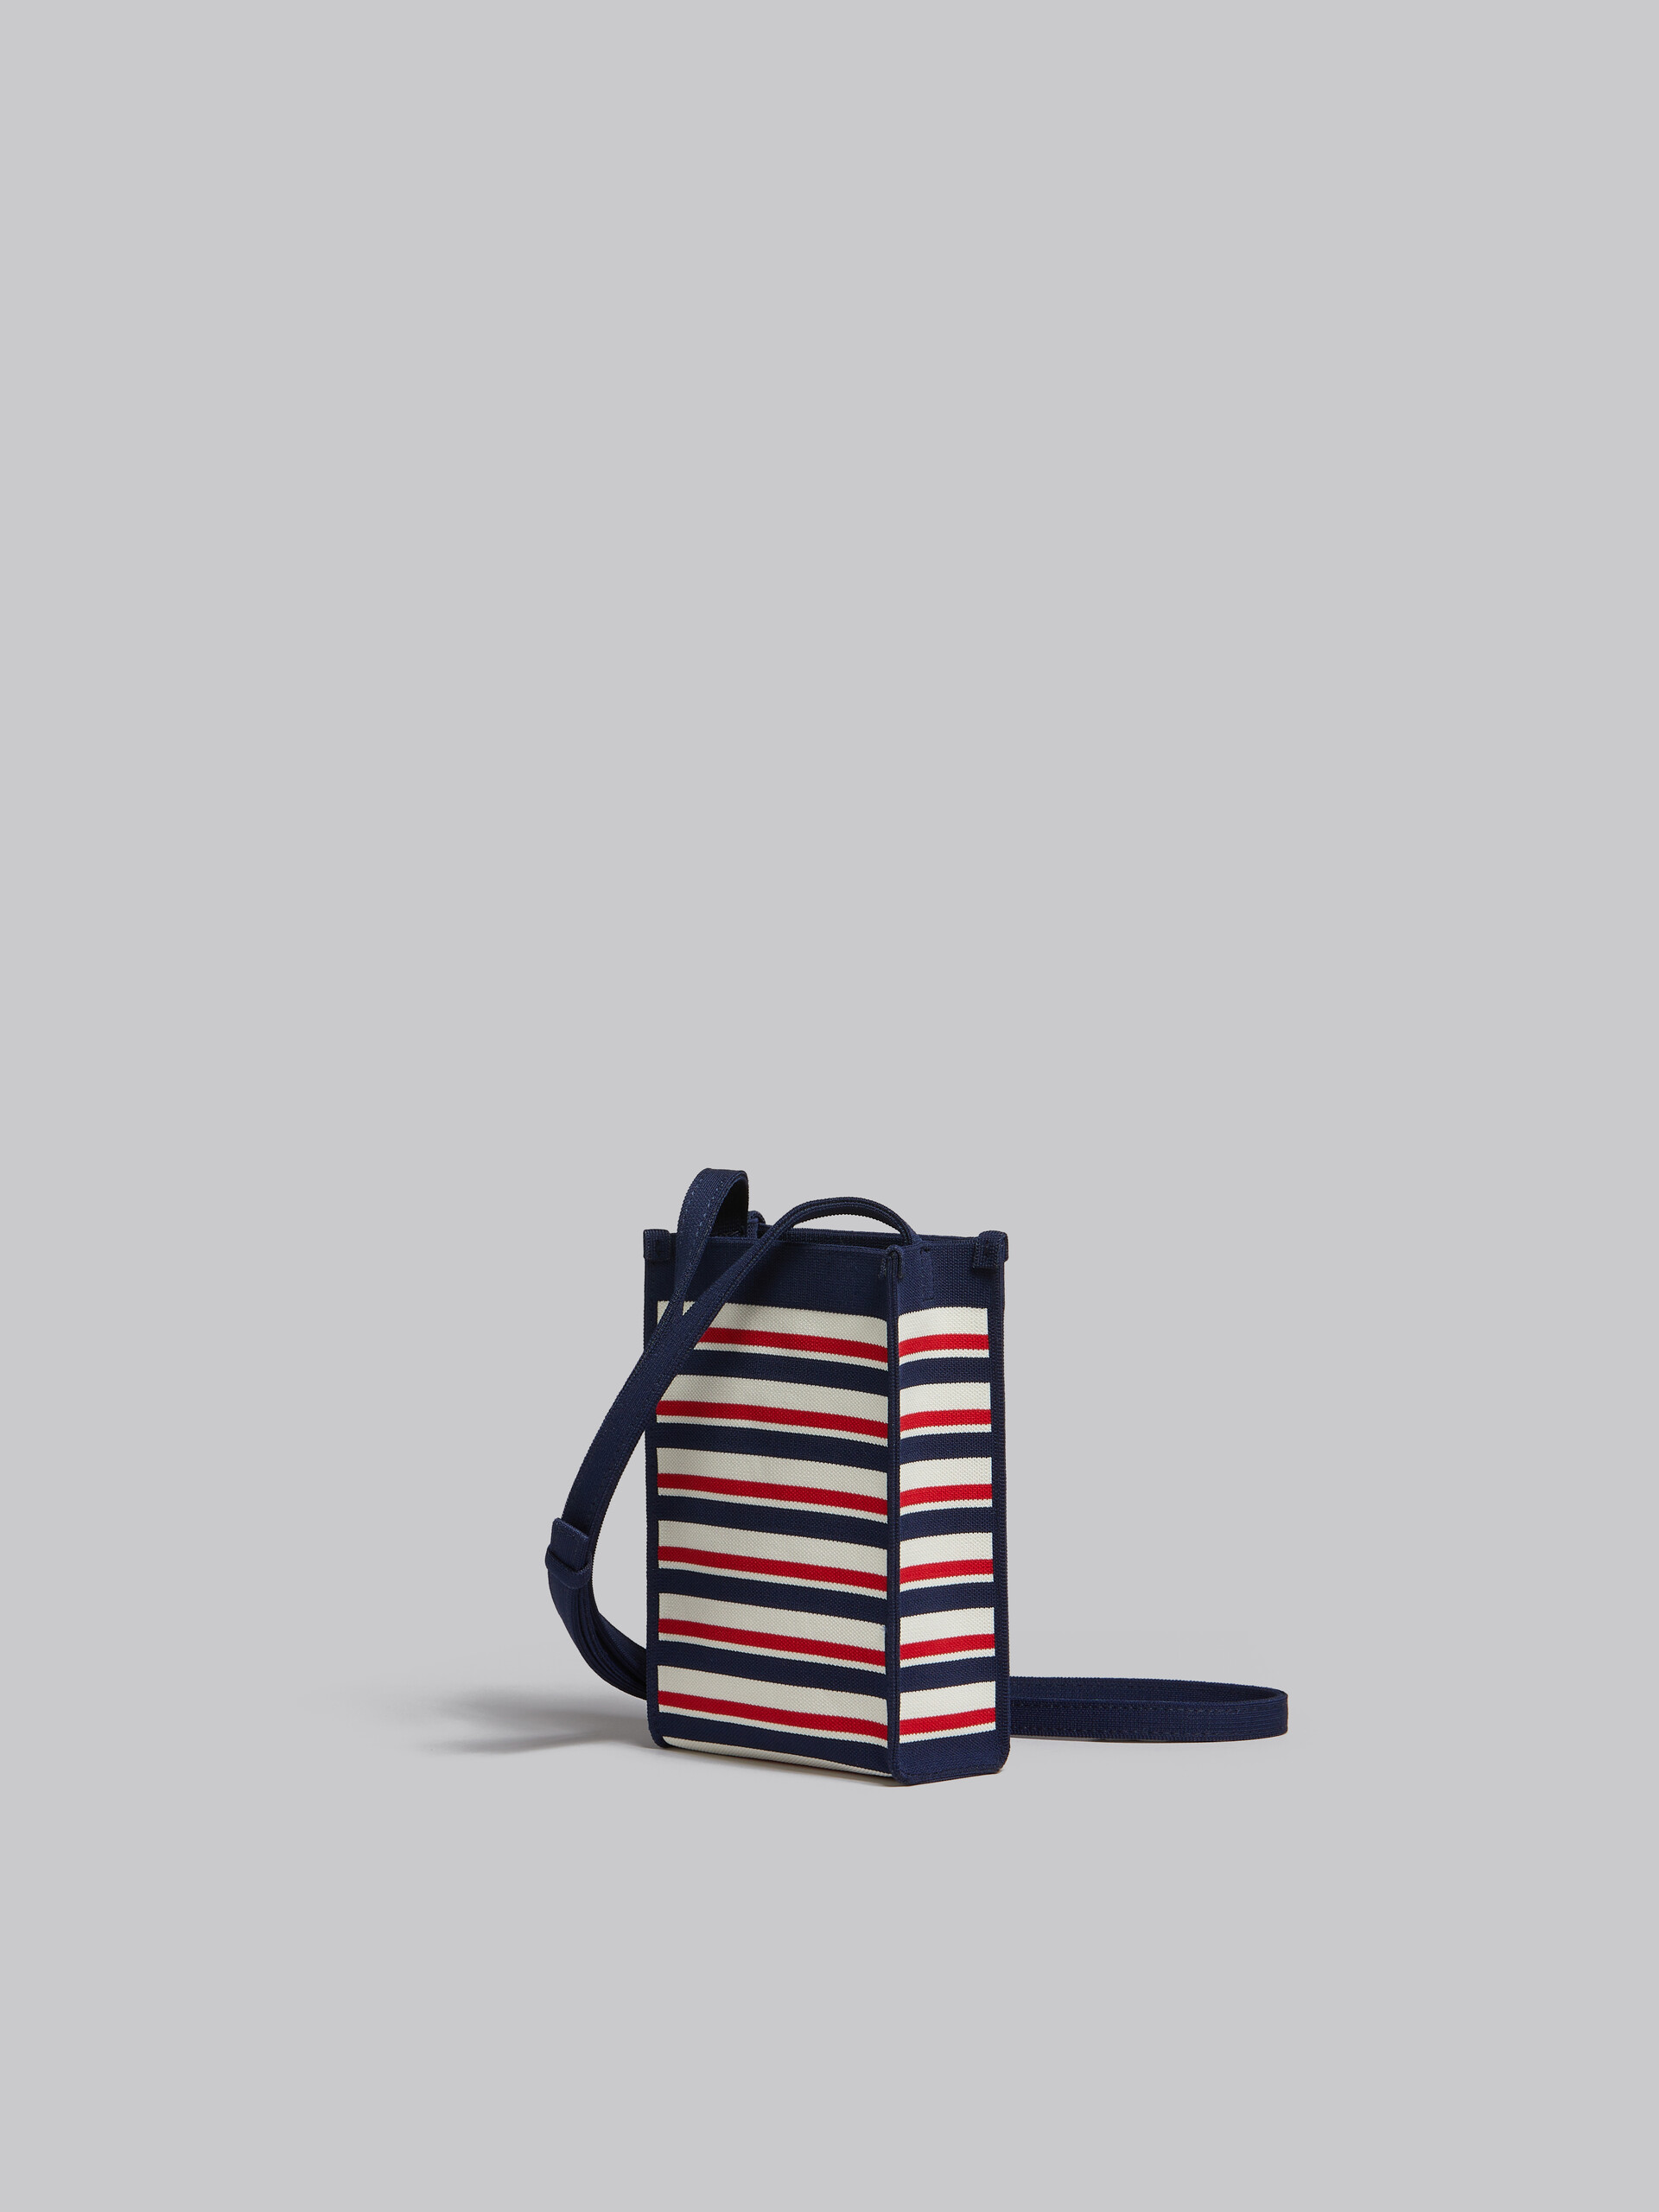 Mini-sac porté épaule en jacquard rayé bleu marine, blanc et rouge - Sacs portés épaule - Image 3